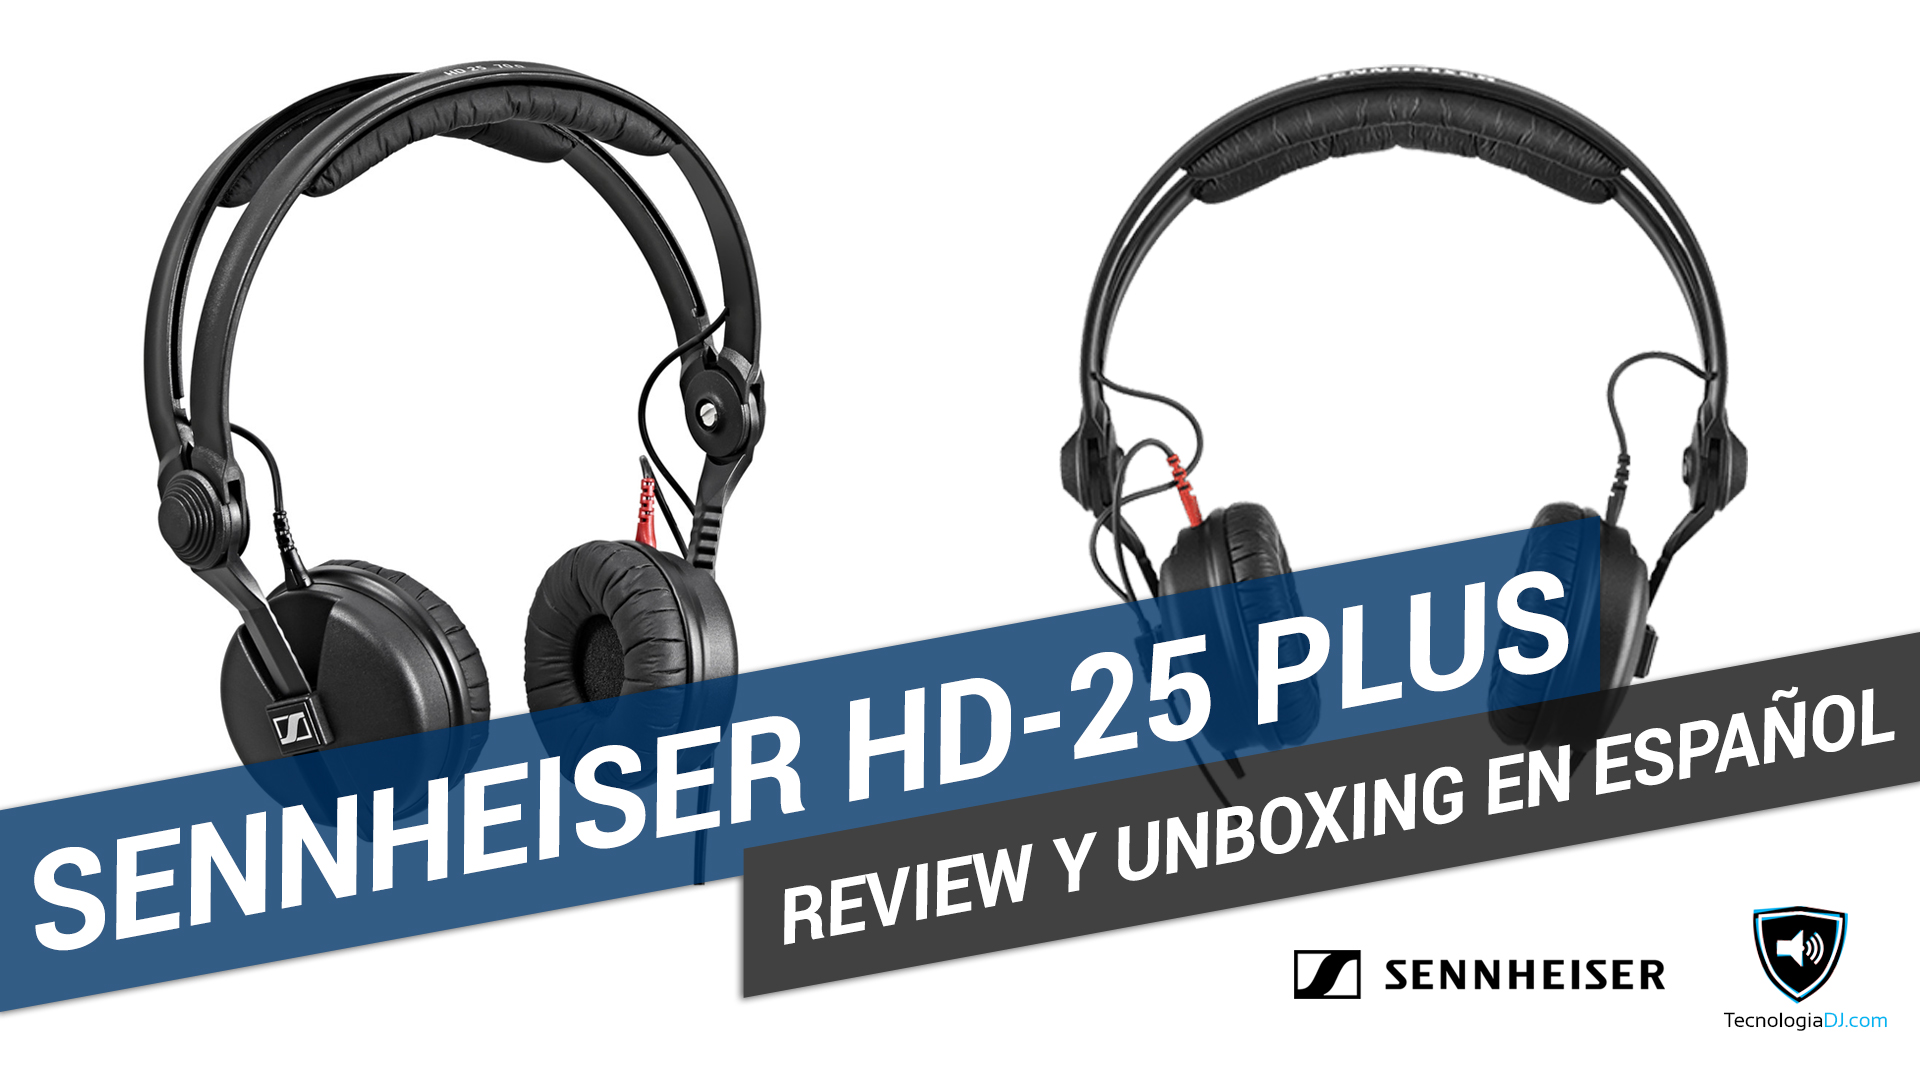 Review y unboxing en español auriculares Sennheiser HD-25 Plus